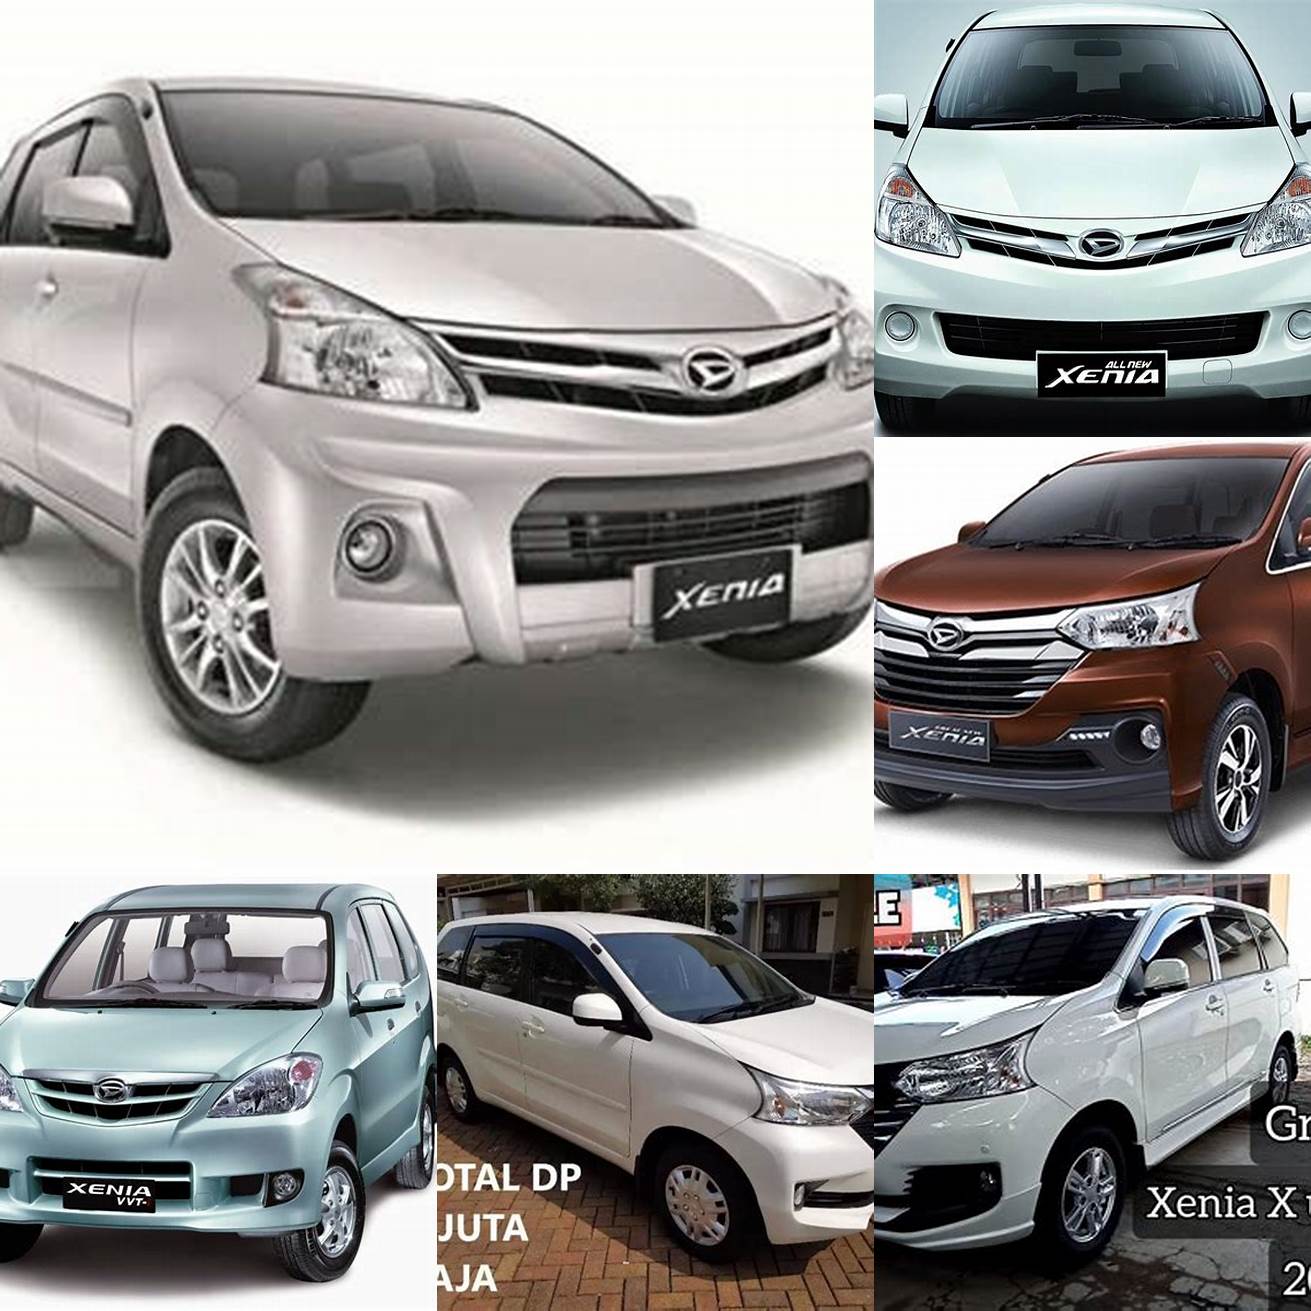 Harga mobil bekas Xenia tahun 2013-2014 berkisar antara 80-90 jutaan